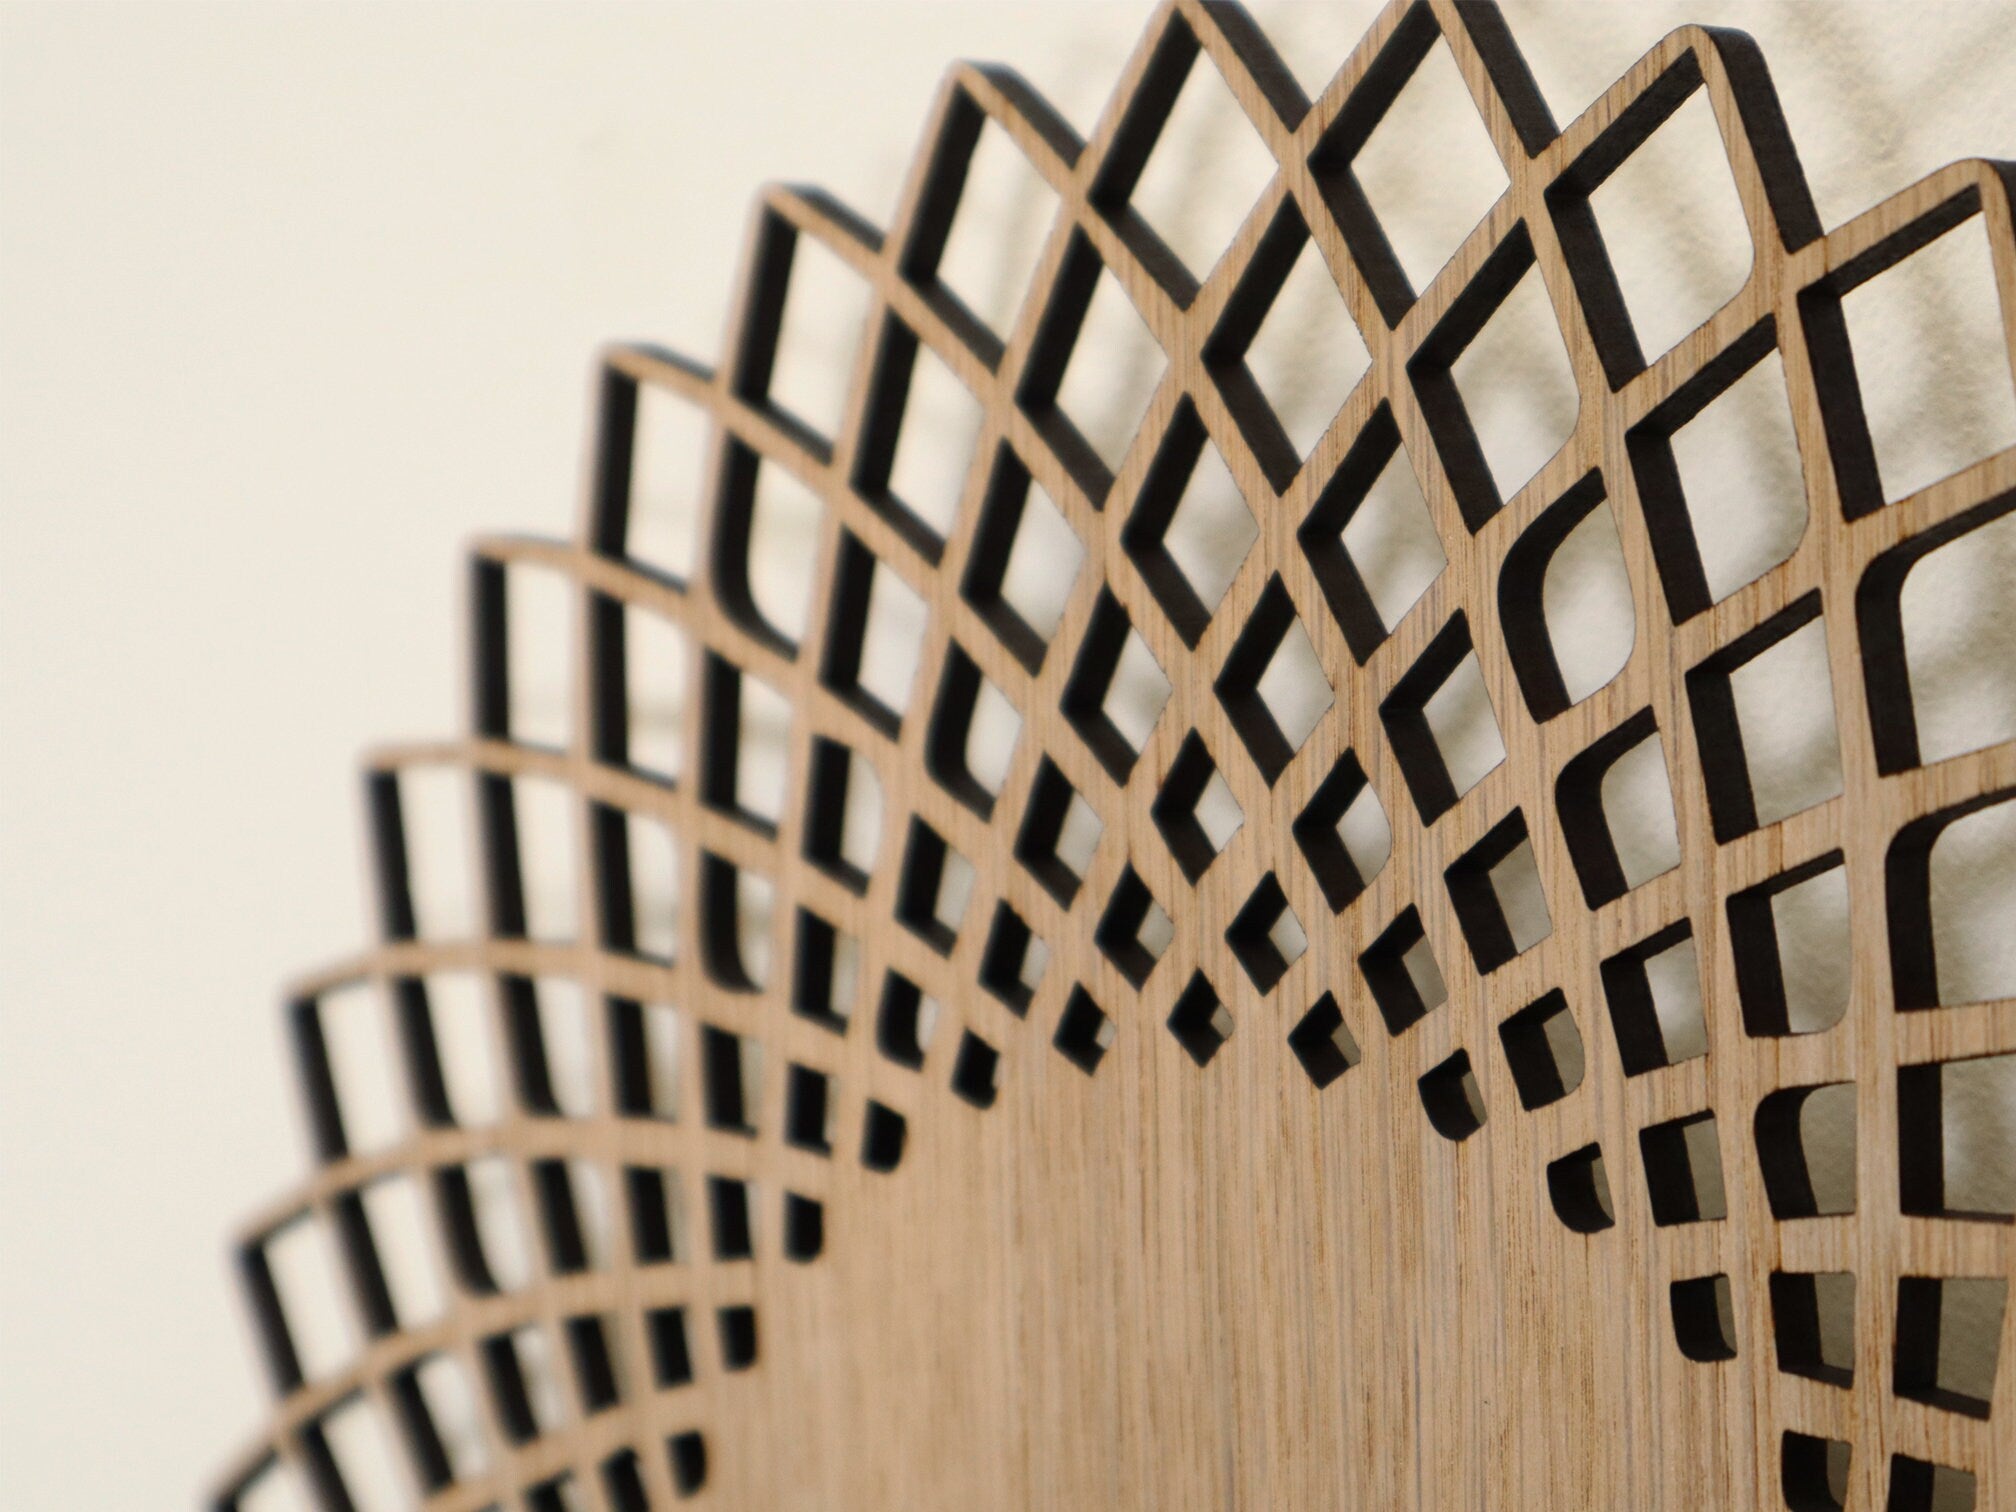 Minimalistic Wooden Geometric Wall Clock - Spiral Design